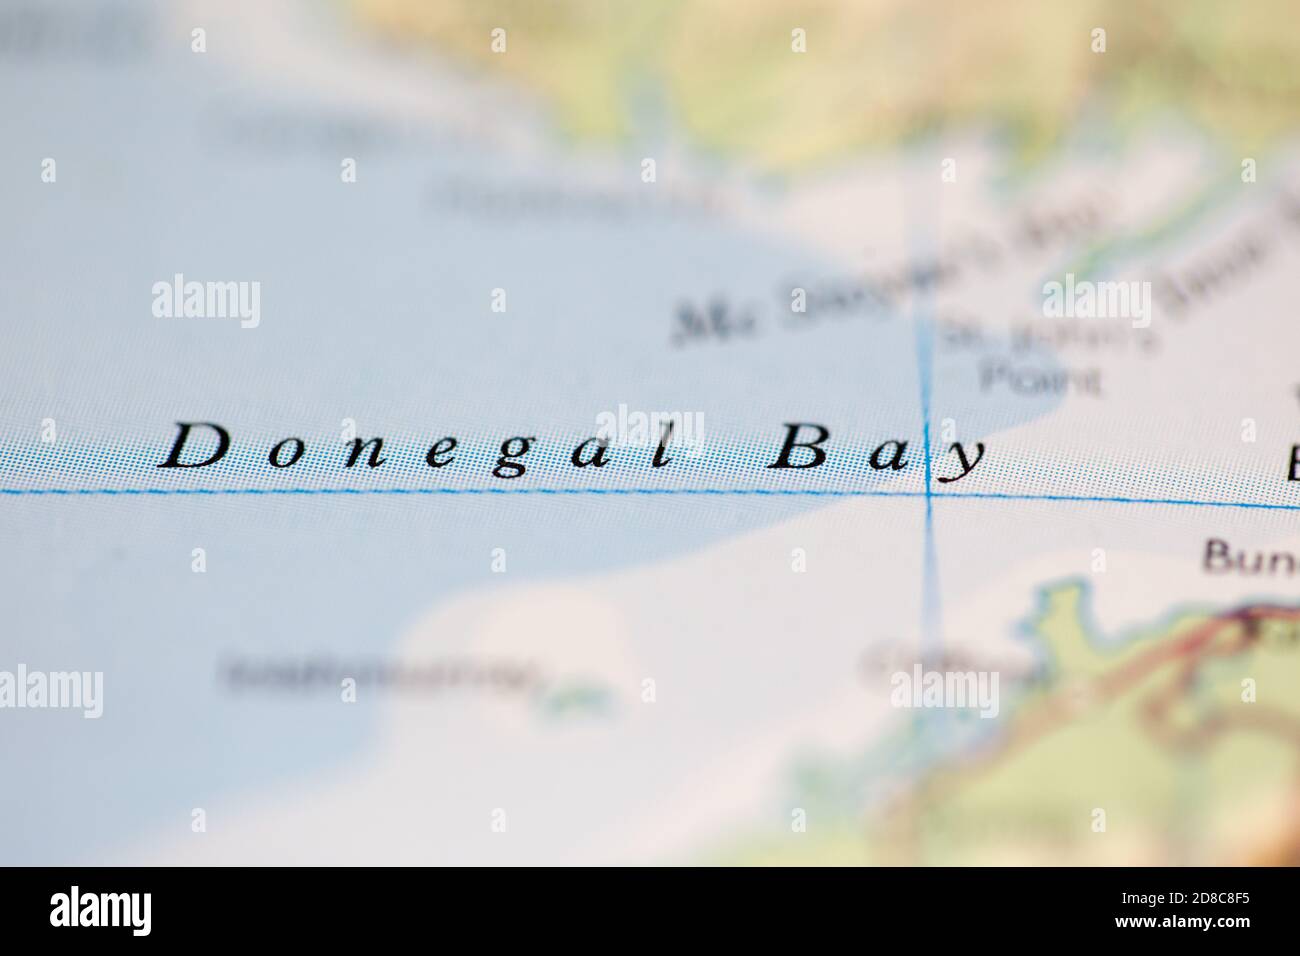 Profundidad de campo reducida se centra en la ubicación del mapa geográfico de Bahía de Donegal frente a la costa de Irlanda en atlas Foto de stock